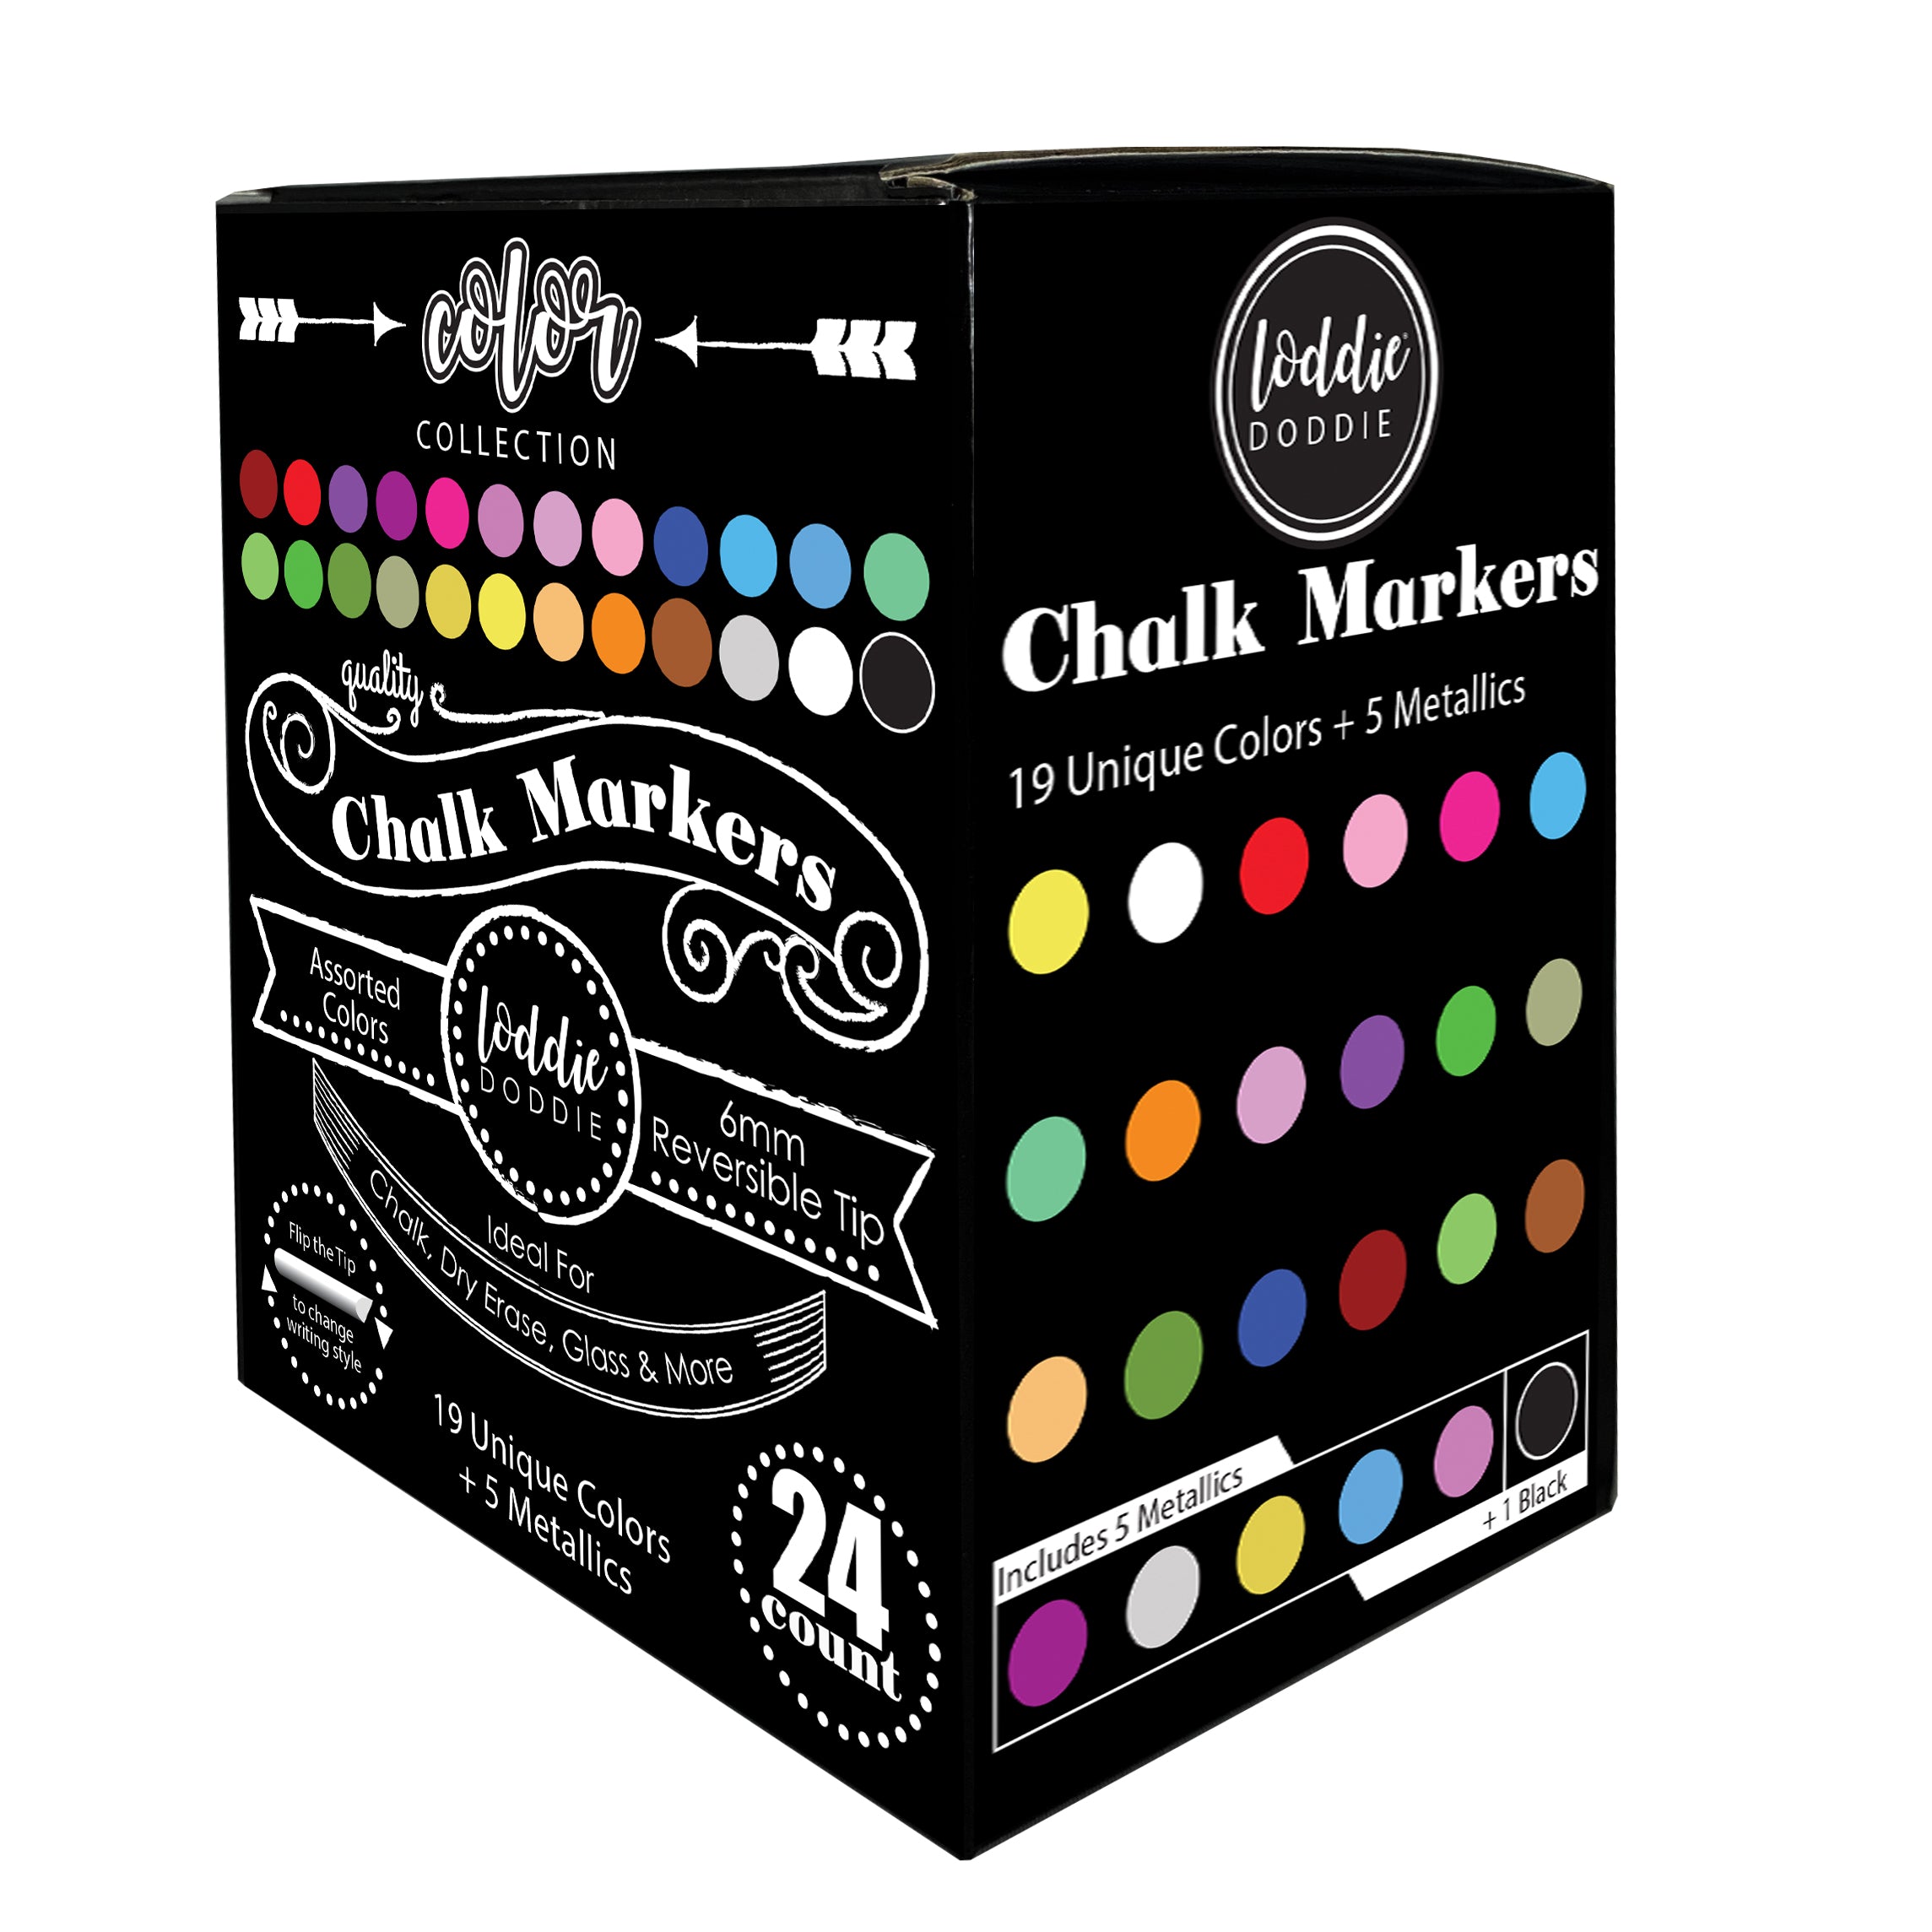 8ct Liquid Chalk Markers- Macaron Pastel MultiColors by Loddie Doddie